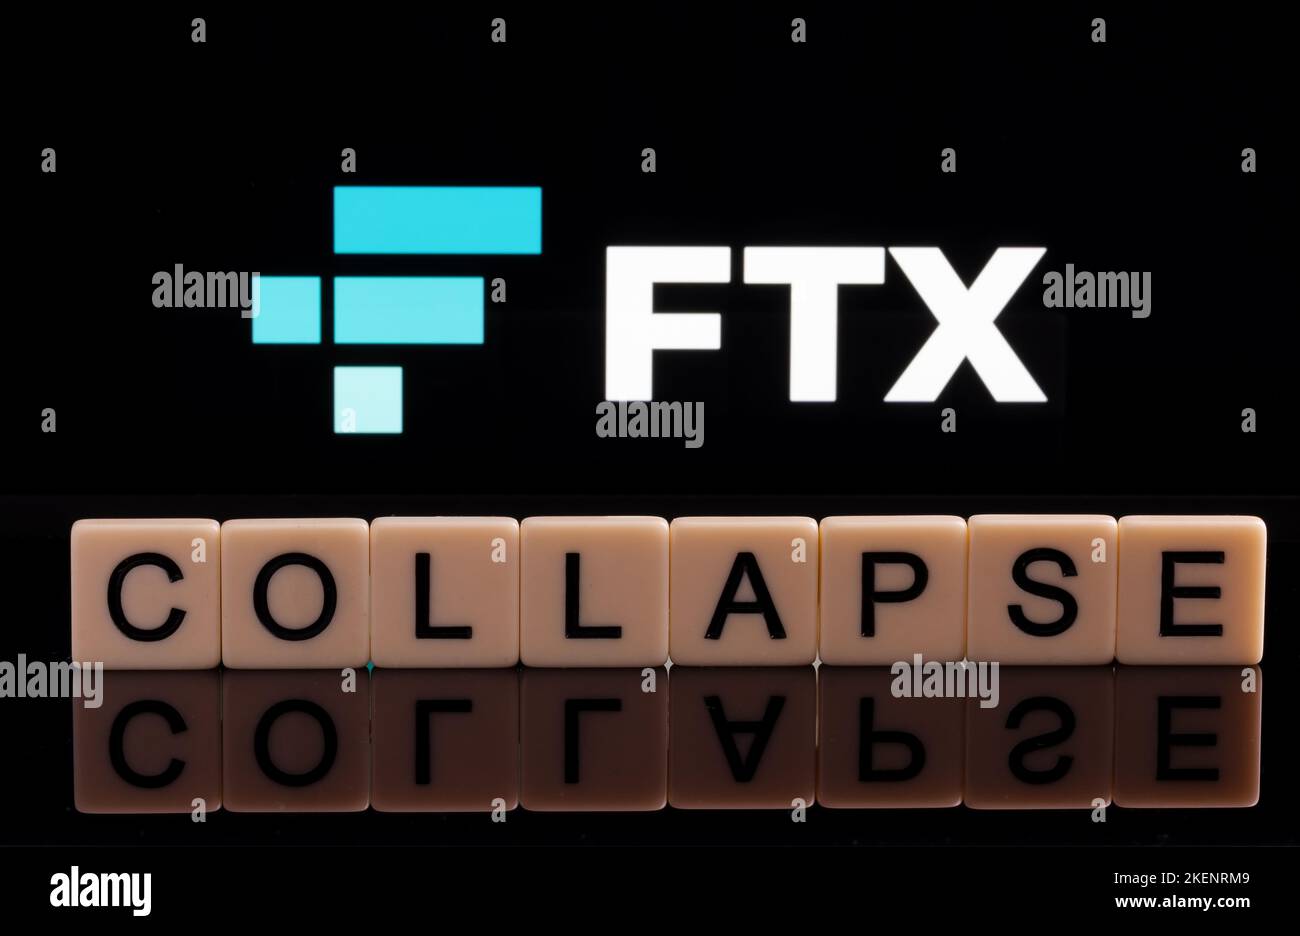 RÉDUIRE le mot fait de lettres vues à l'avant et flou FTX crypto-monnaie logo vu sur l'affichage. Concept de faillite d'entreprise. Stafford, ONU Banque D'Images